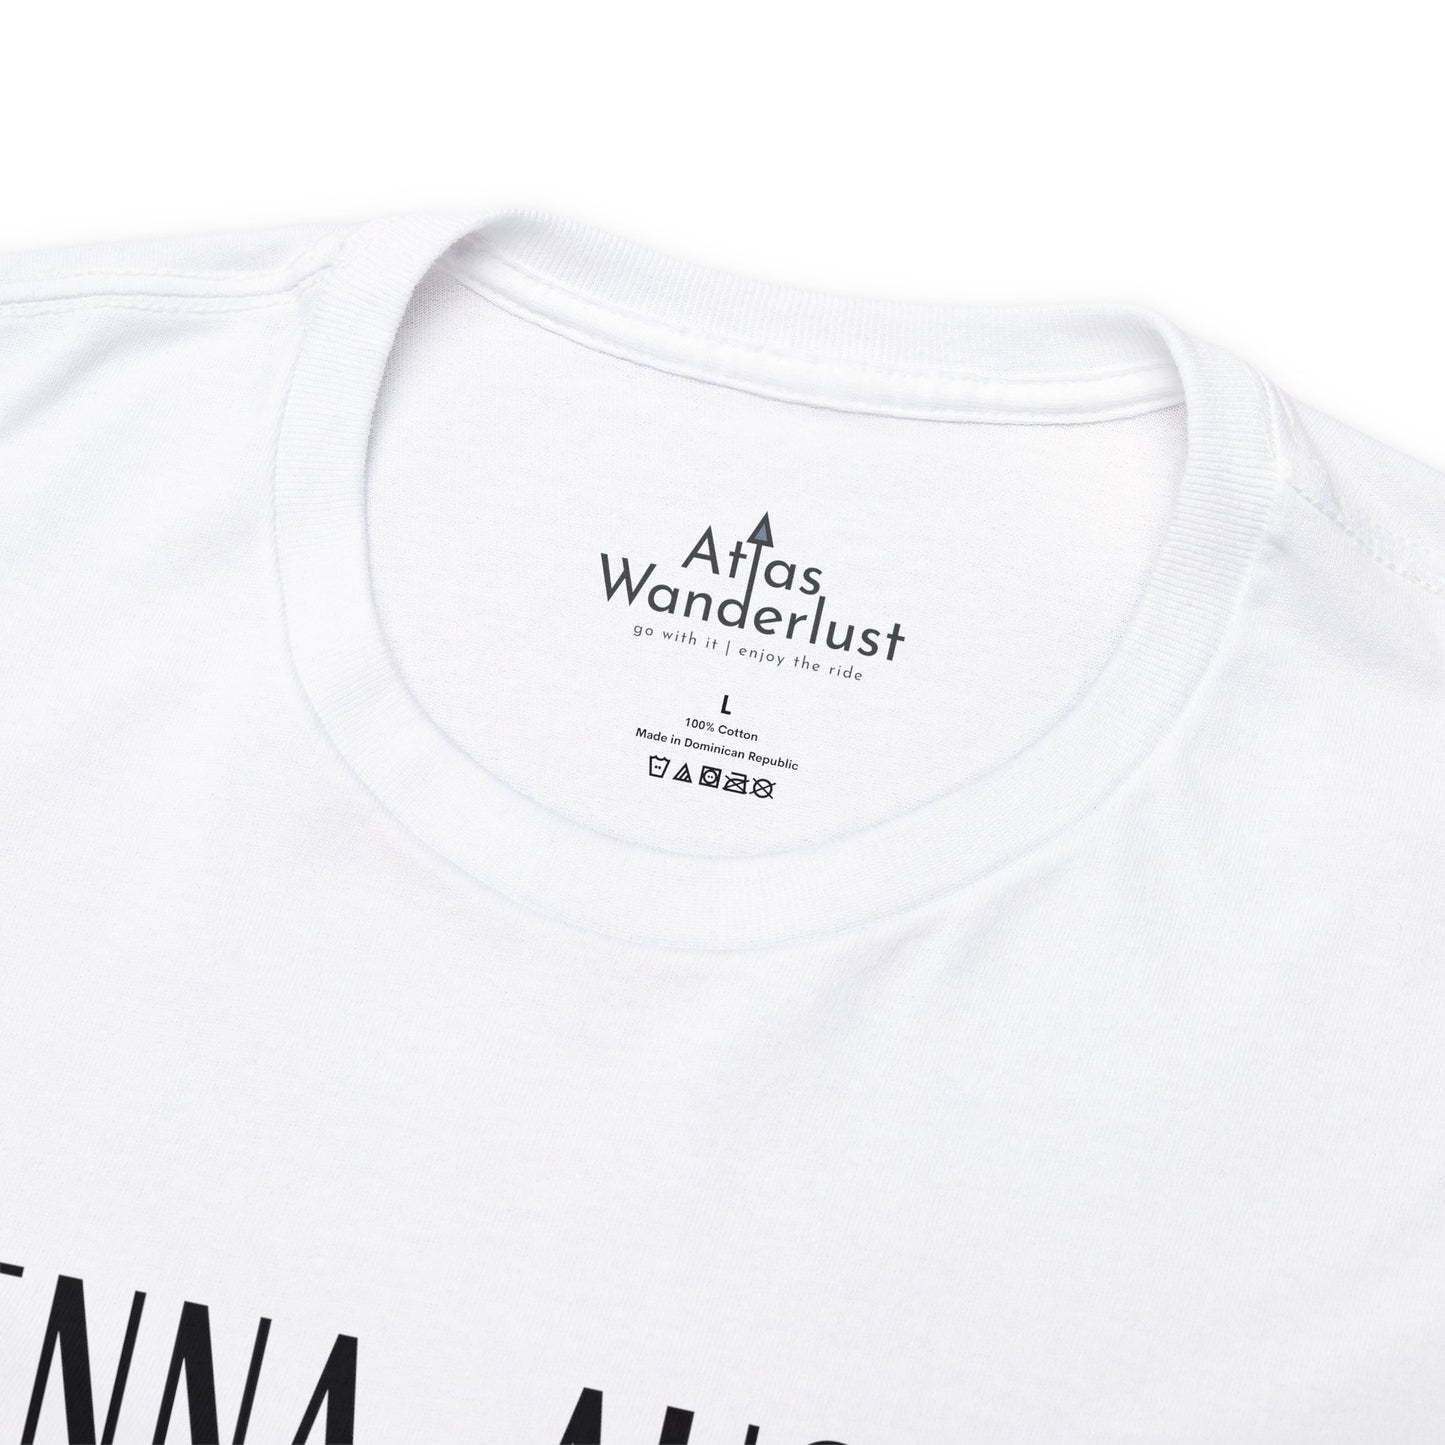 Vienna, Austria Coordinates T-Shirt, Modern Travel Tee